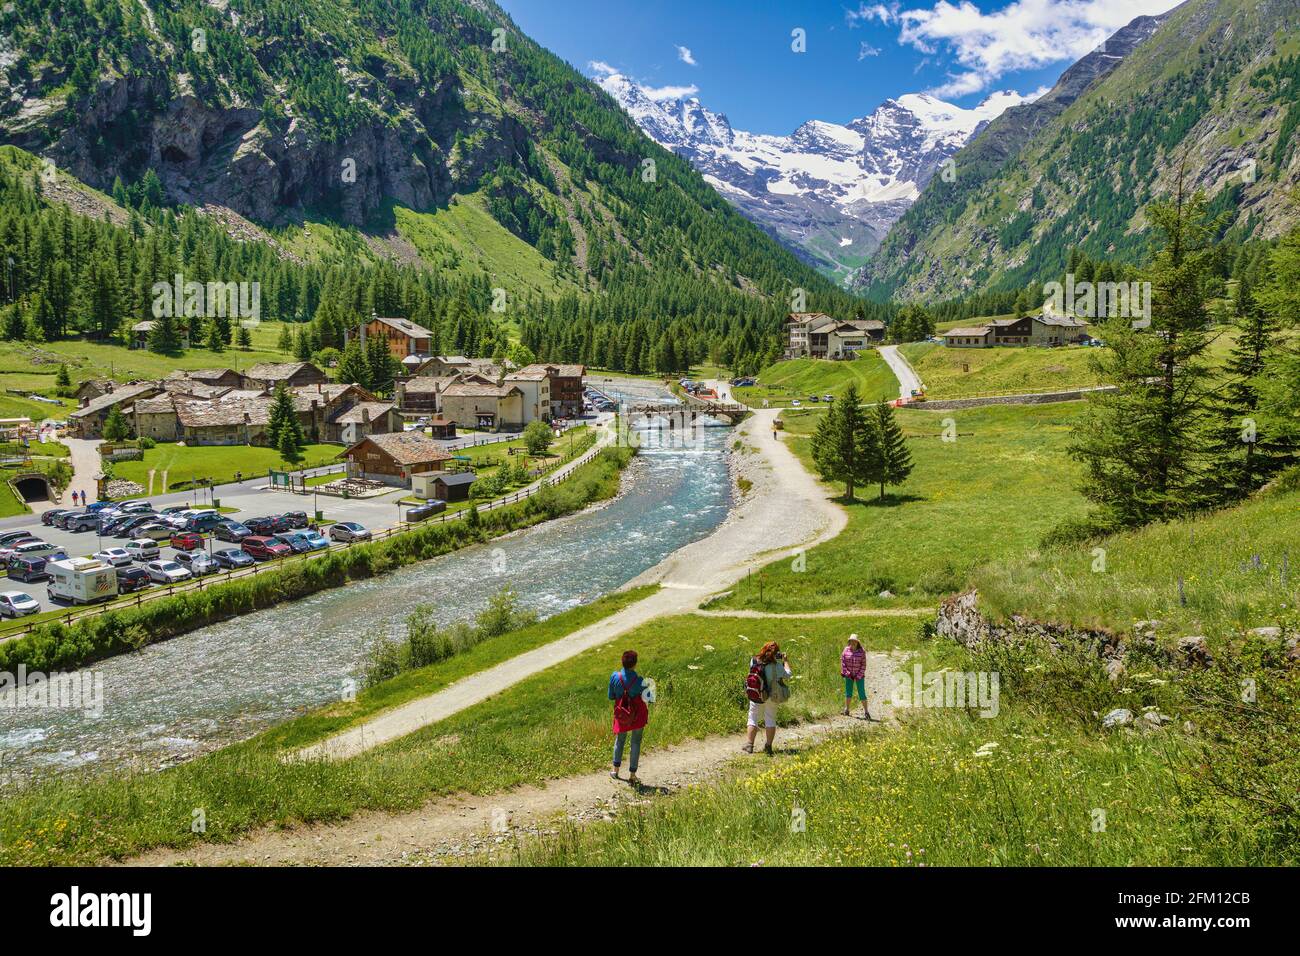 Escursioni nel Parco Nazionale del Gran Paradiso o nel Parco Nazionale del Gran Paradiso, Valle d'Aosta, Italia. Valnontey villaggio in background. Foto Stock